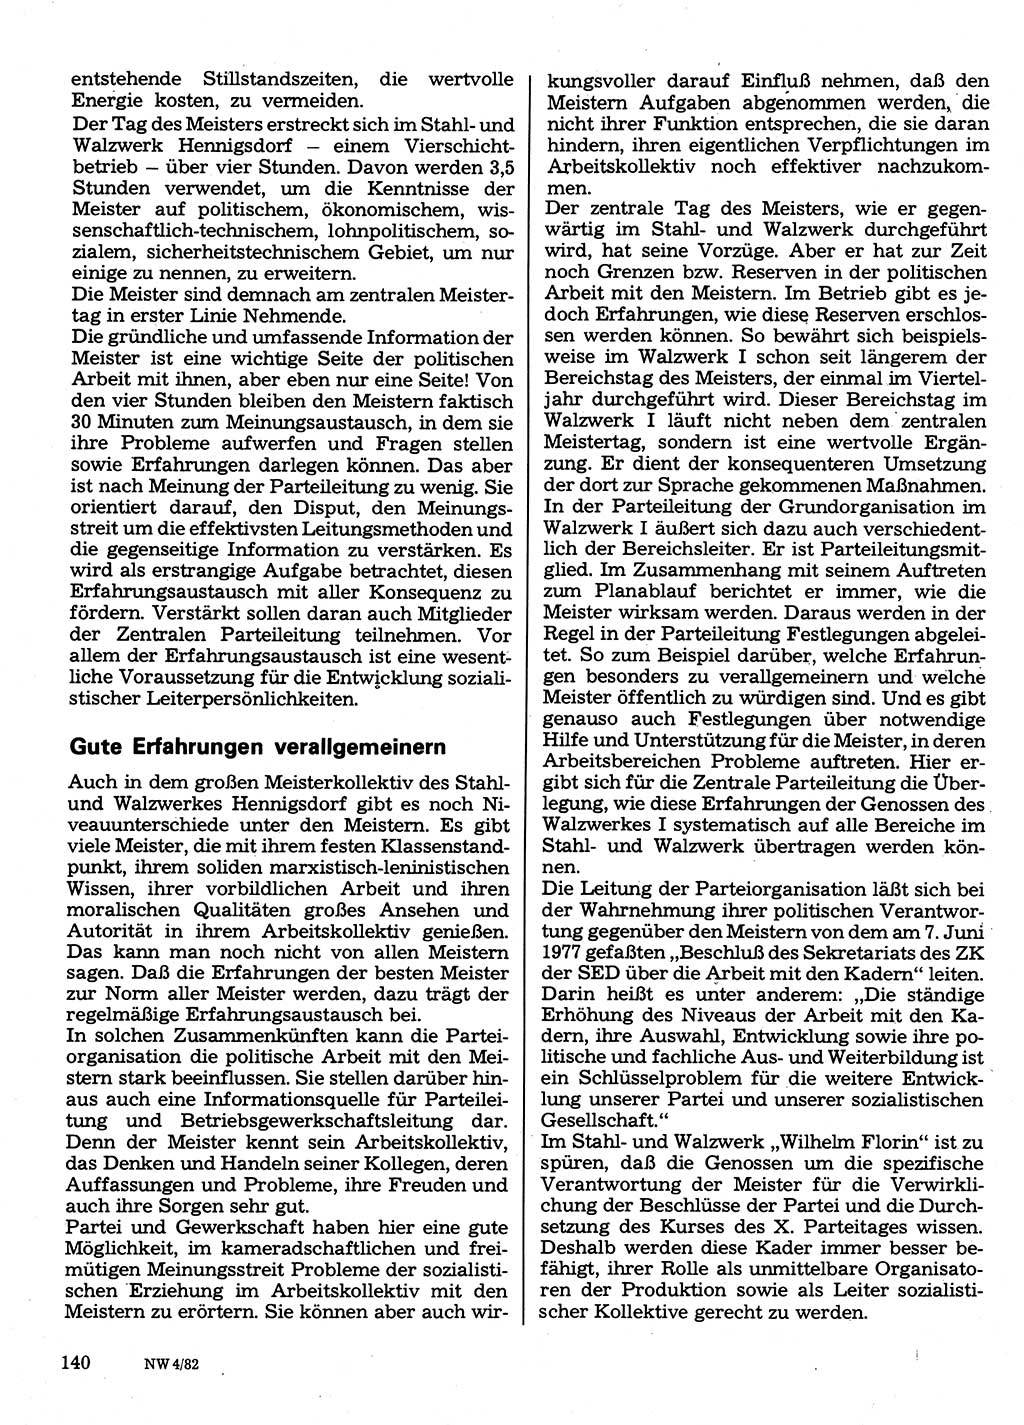 Neuer Weg (NW), Organ des Zentralkomitees (ZK) der SED (Sozialistische Einheitspartei Deutschlands) für Fragen des Parteilebens, 37. Jahrgang [Deutsche Demokratische Republik (DDR)] 1982, Seite 140 (NW ZK SED DDR 1982, S. 140)